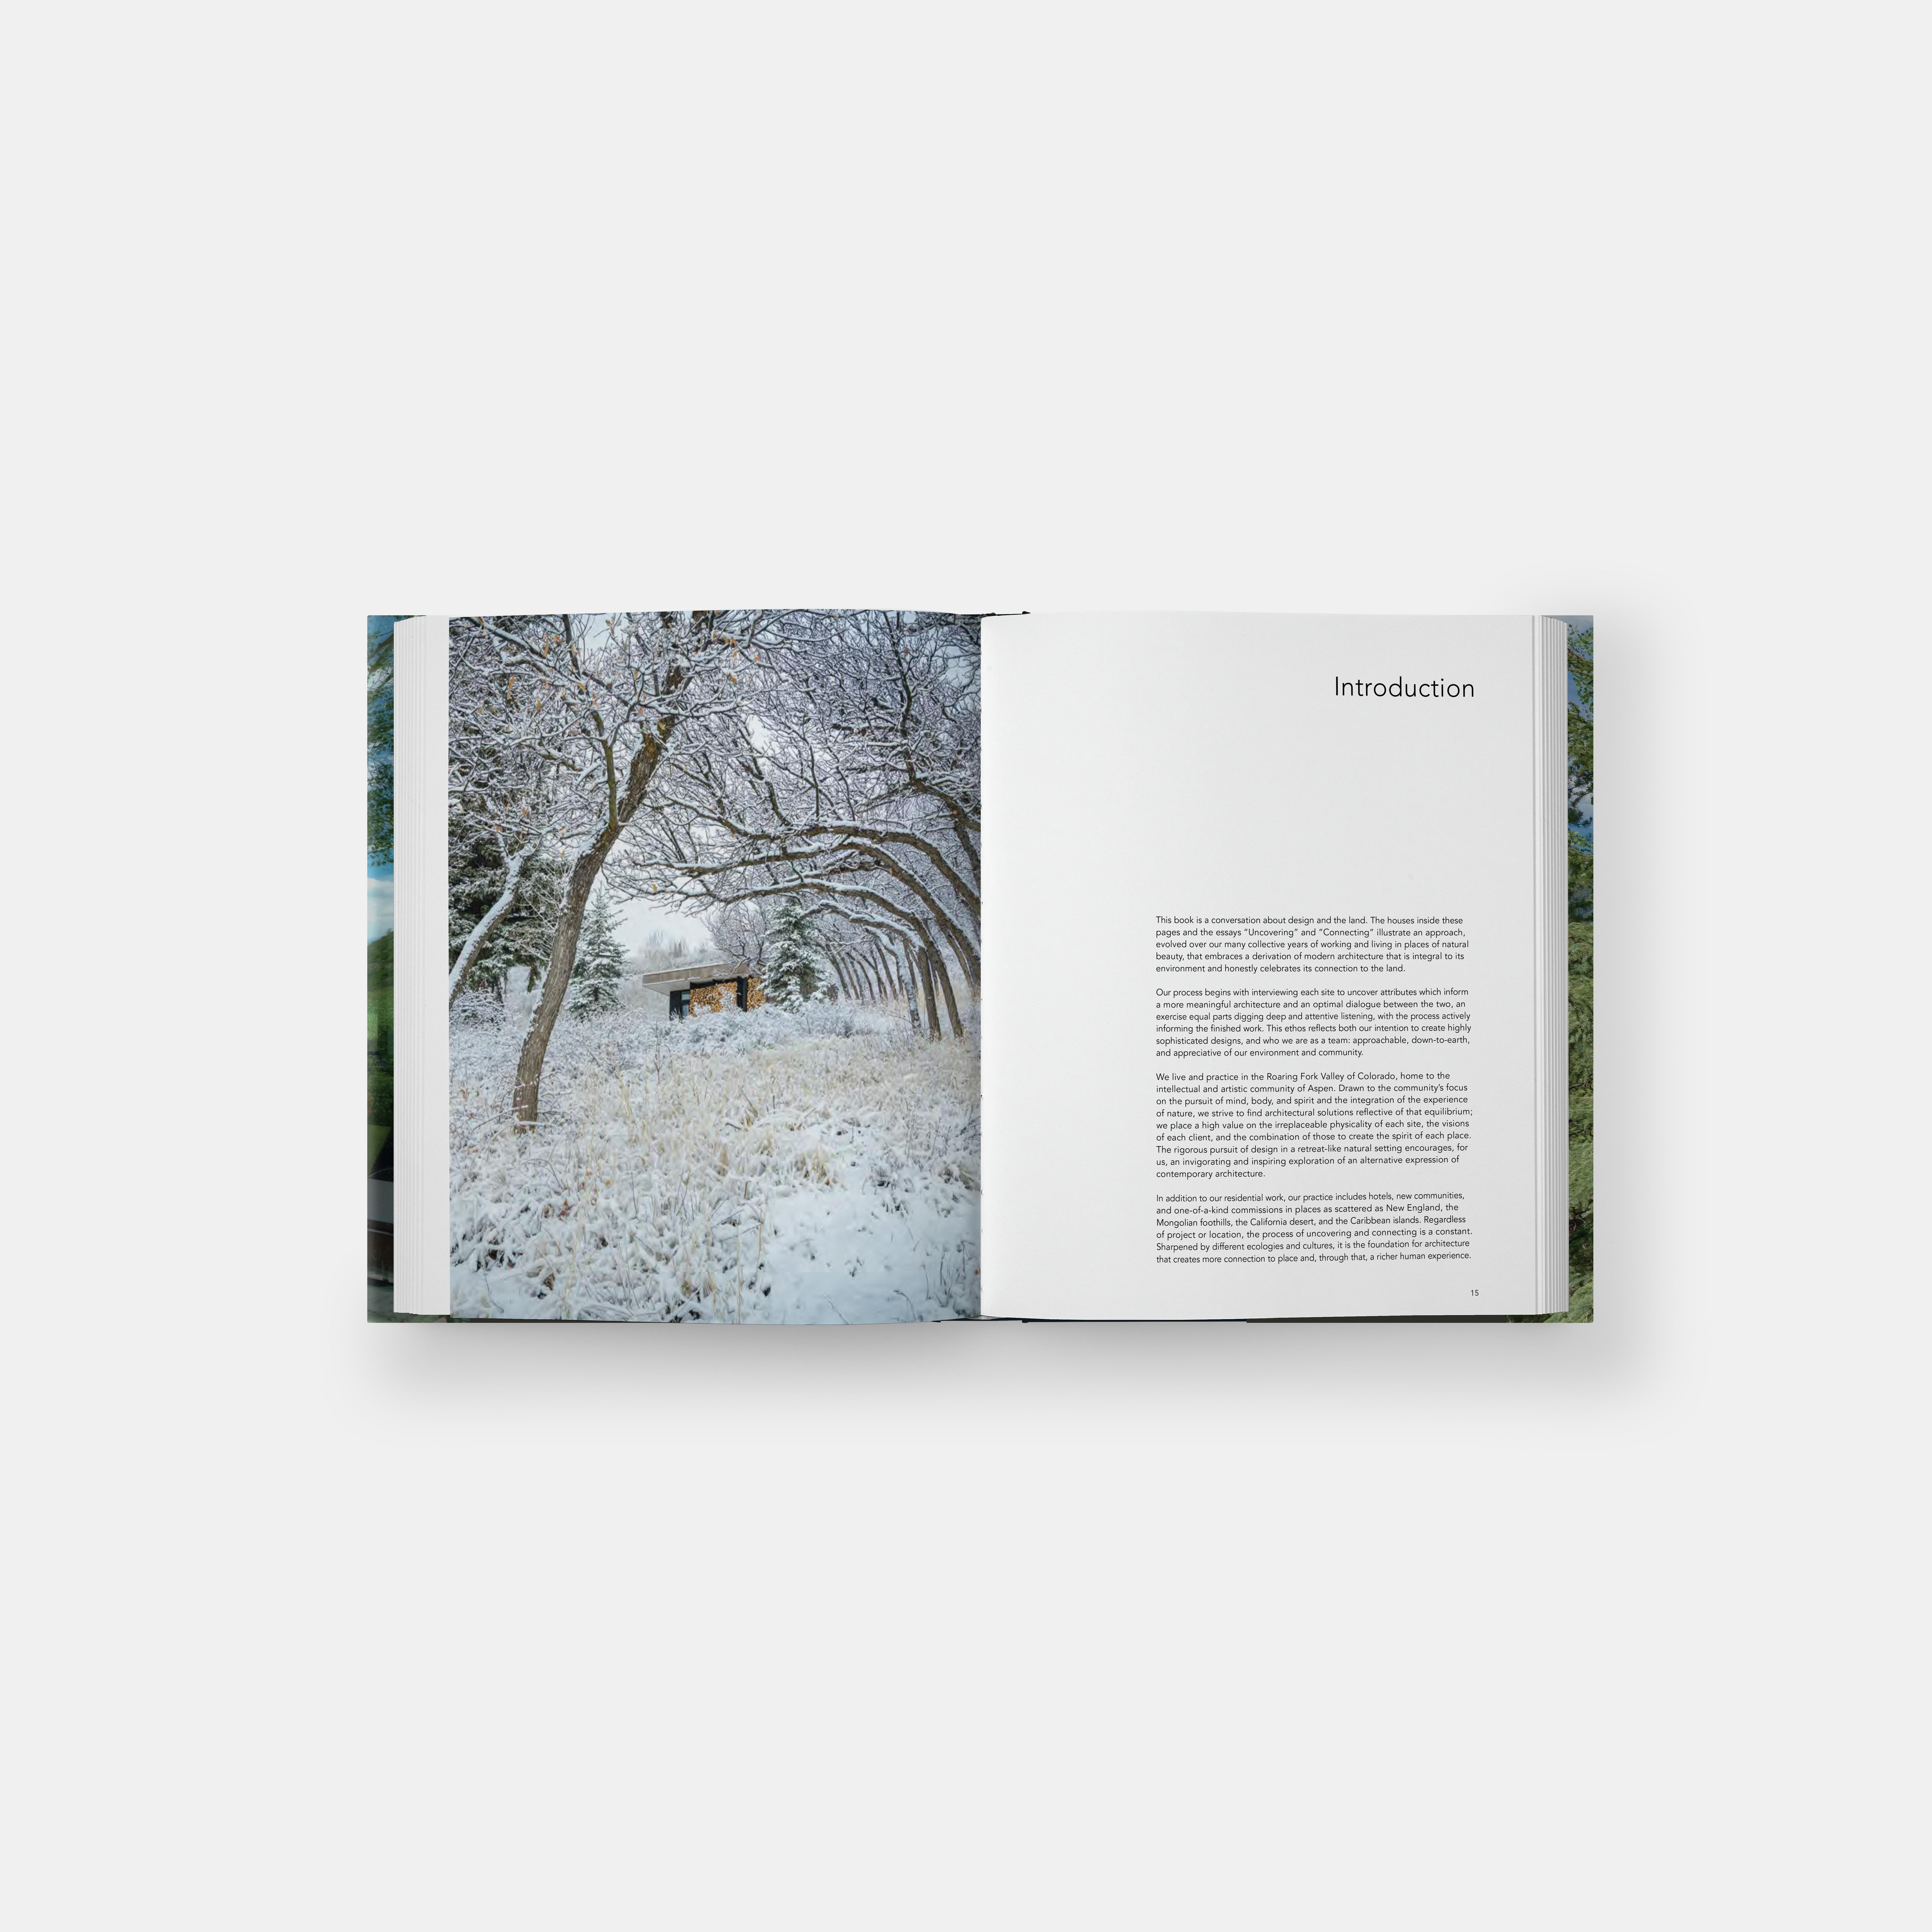 Connection est une monographie de dix résidences qui articulent le processus de conception du bureau et l'exploration de la création de solutions architecturales enracinées dans un lieu naturel.

Connection donne un aperçu de la manière dont CCY